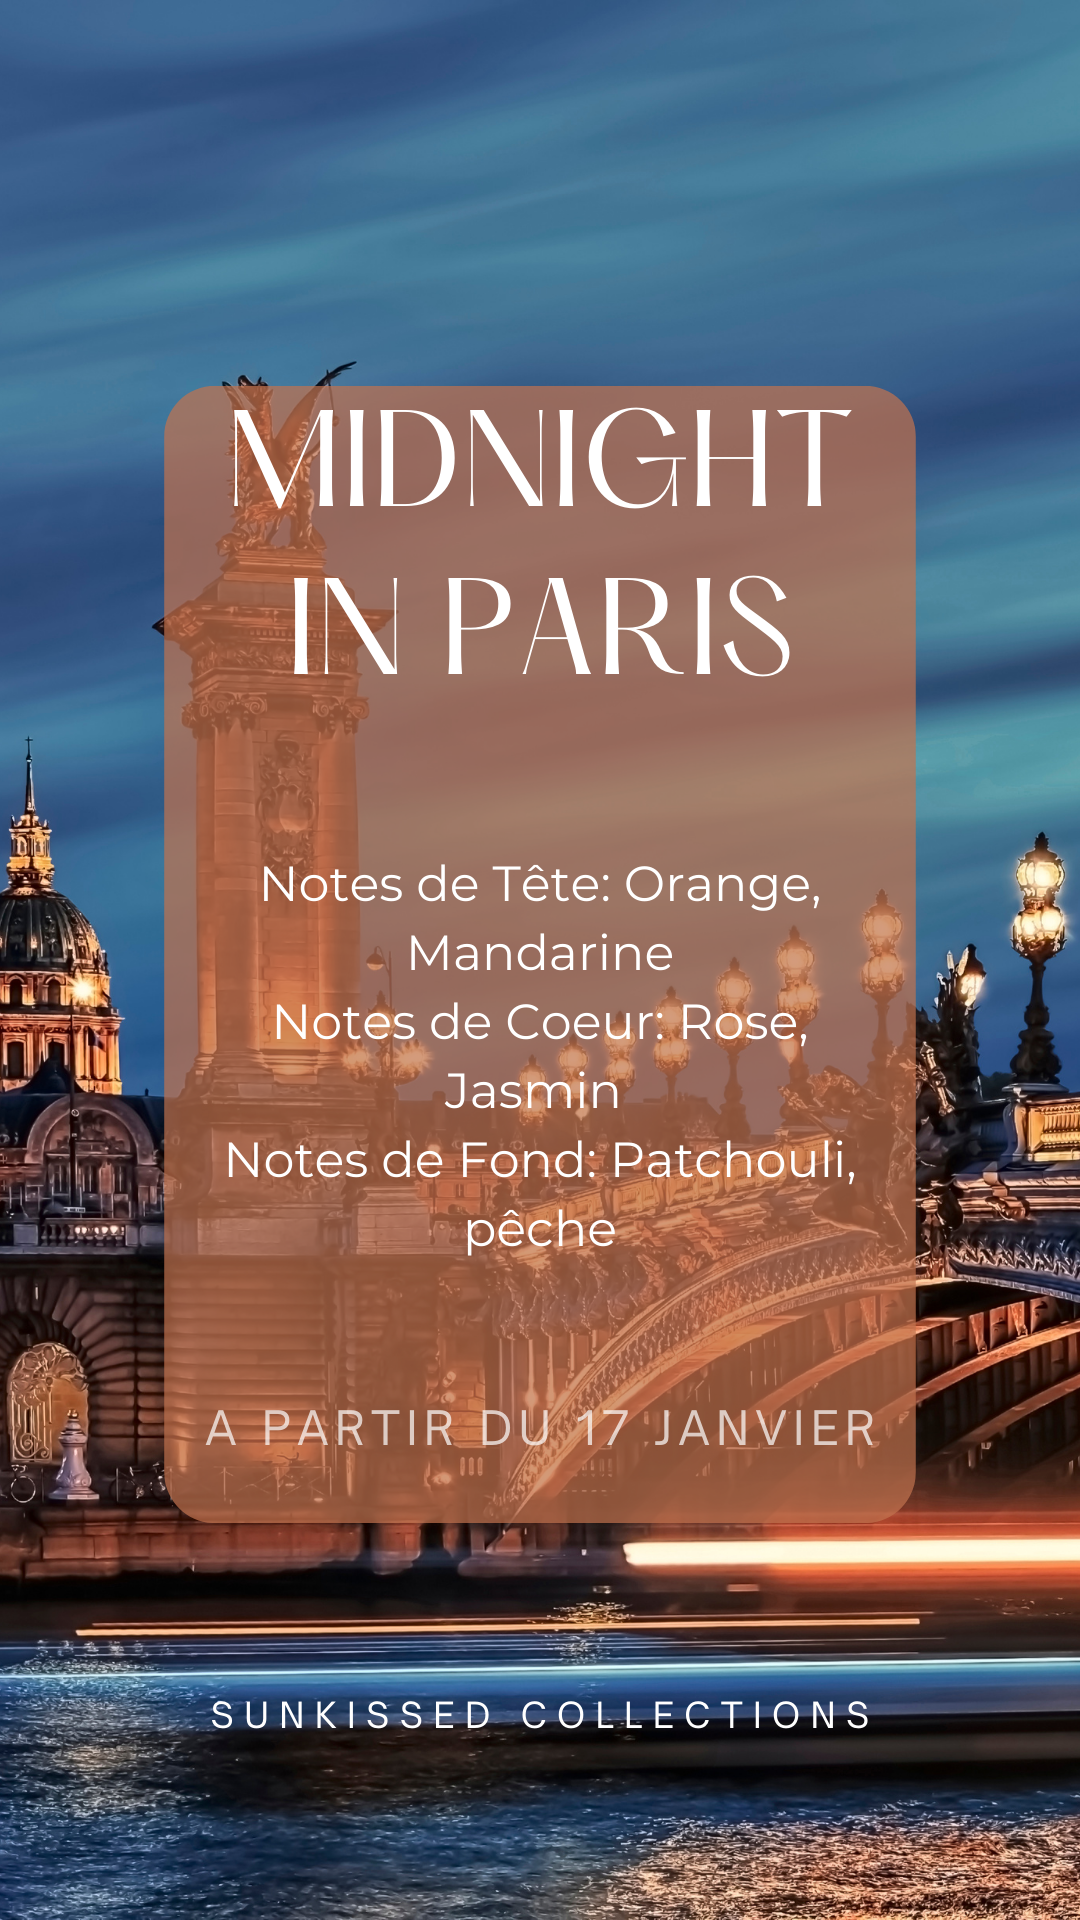 Fondant Parfumé - Midnight in Paris